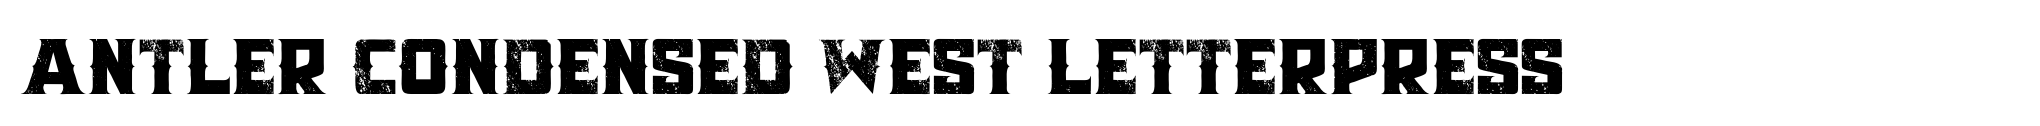 Antler Condensed West Letterpress image